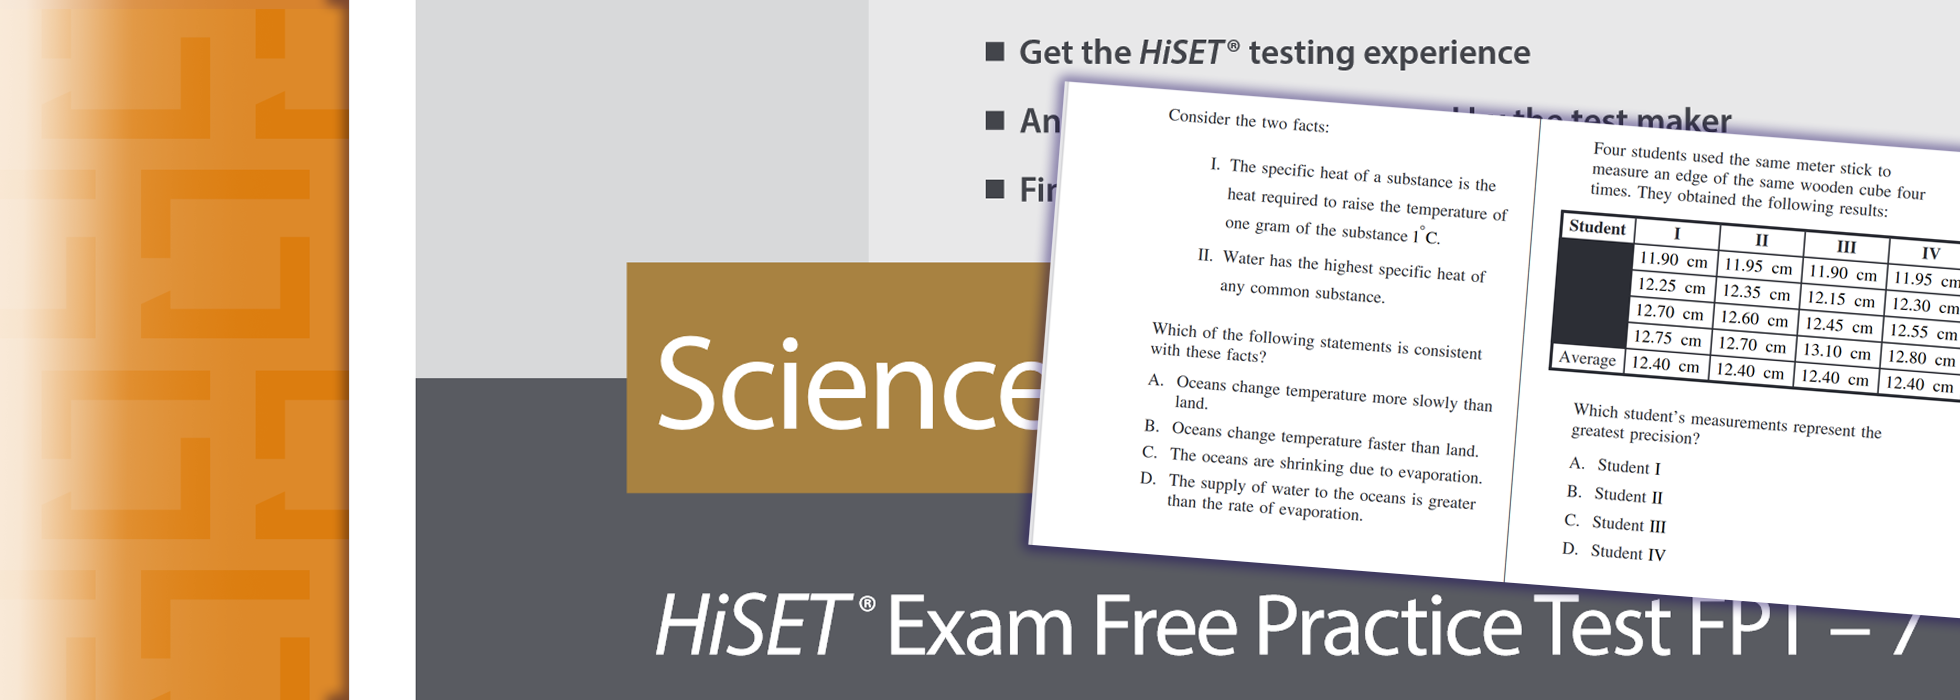 hiset-practice-tests-hiset